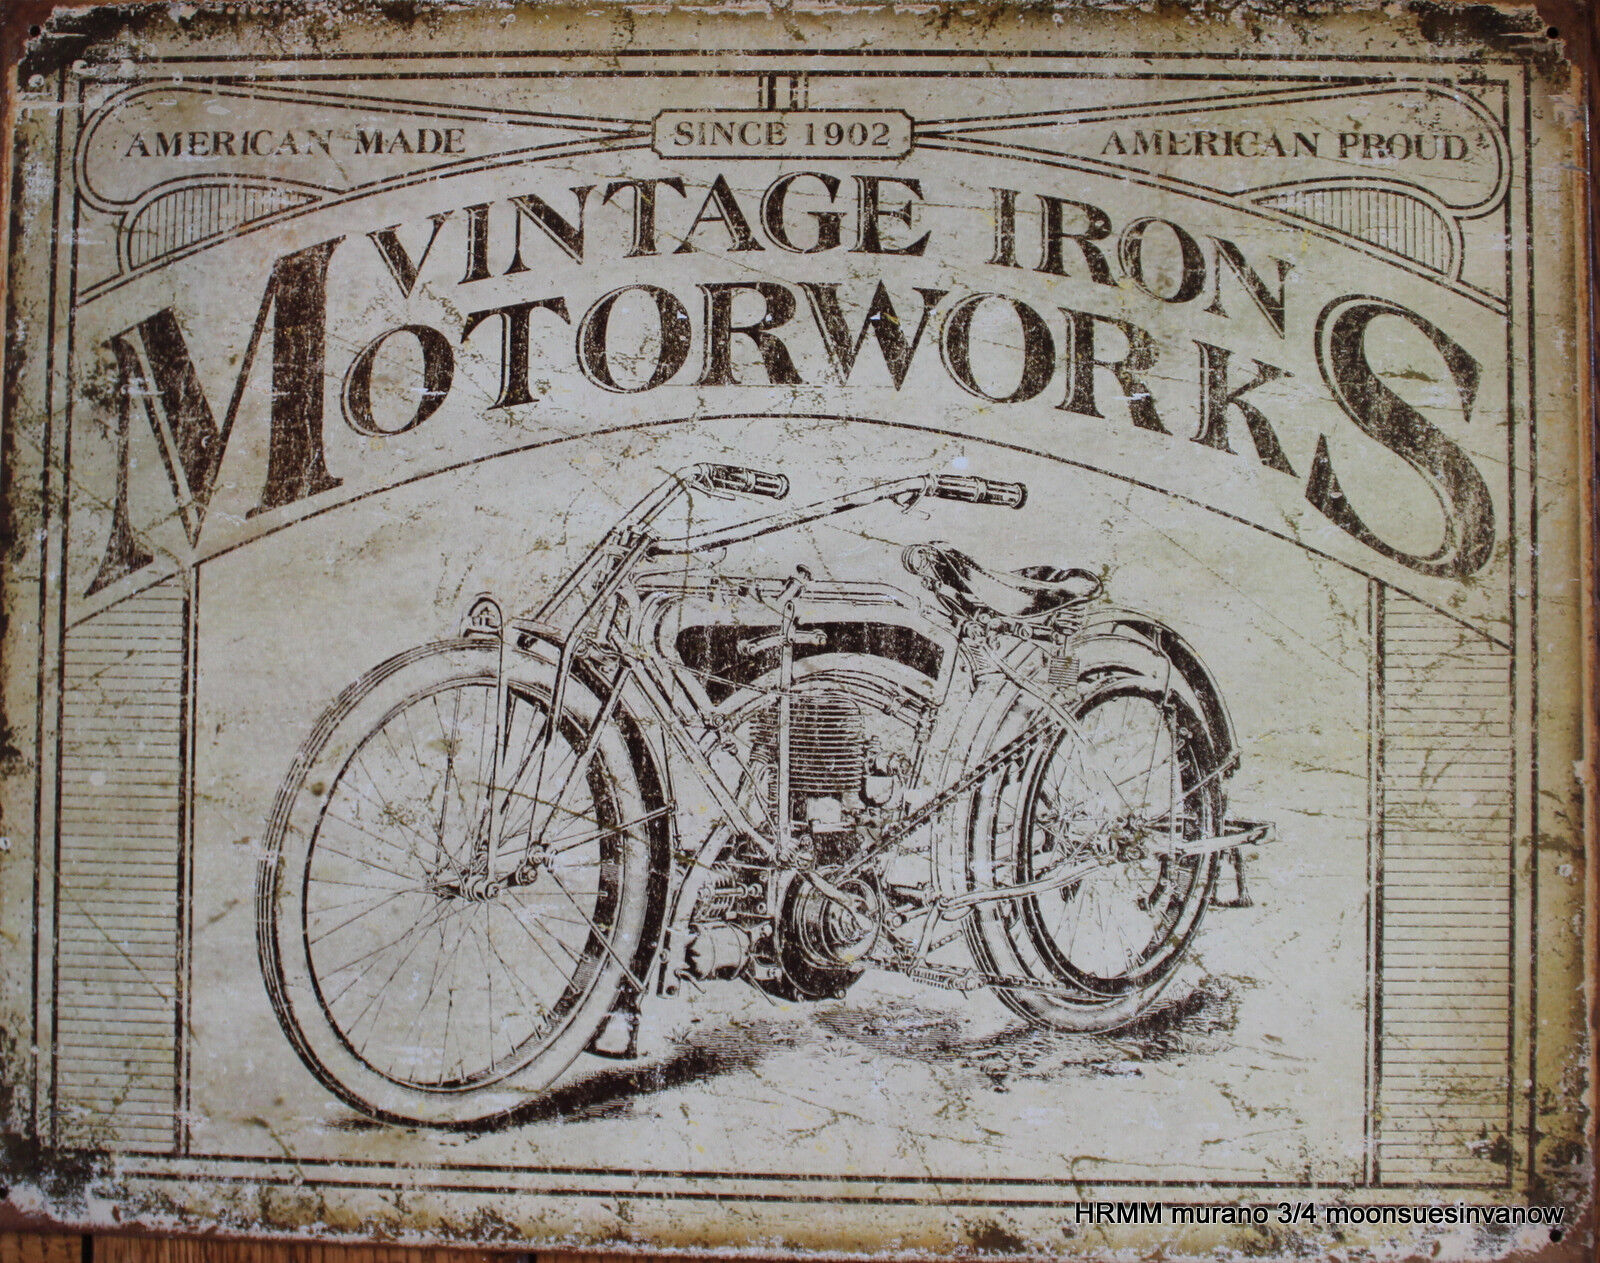 Motorcycle Distressed Tin Sign Advertizing Vintage Iron Motorworks Biker 